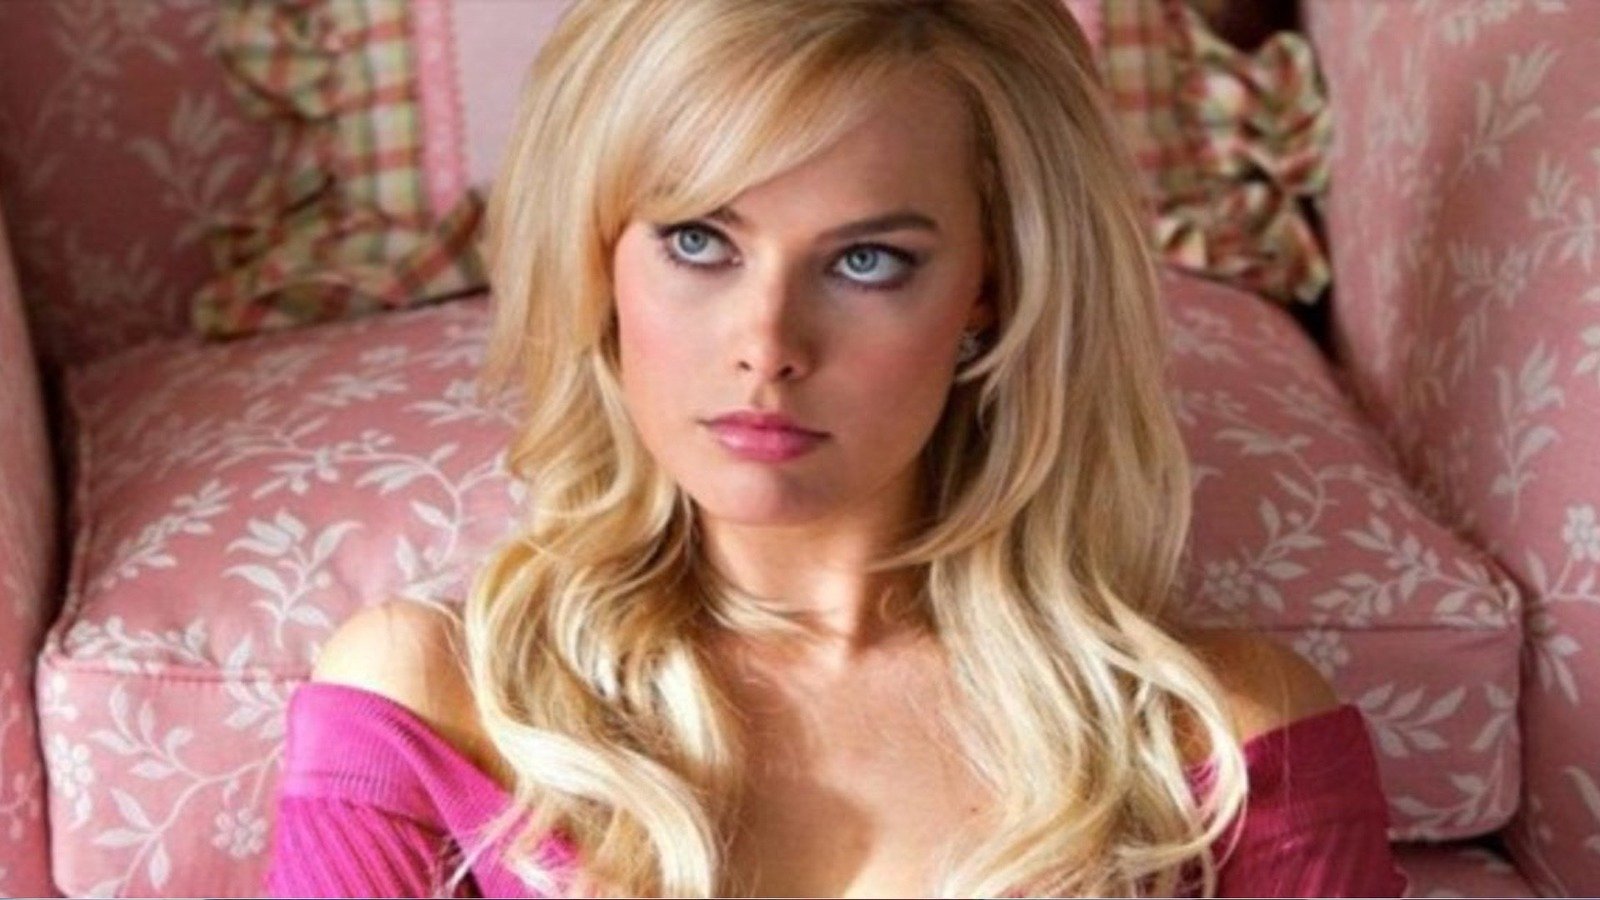 Margot Robbie's Barbie Movie - What We Know So Far